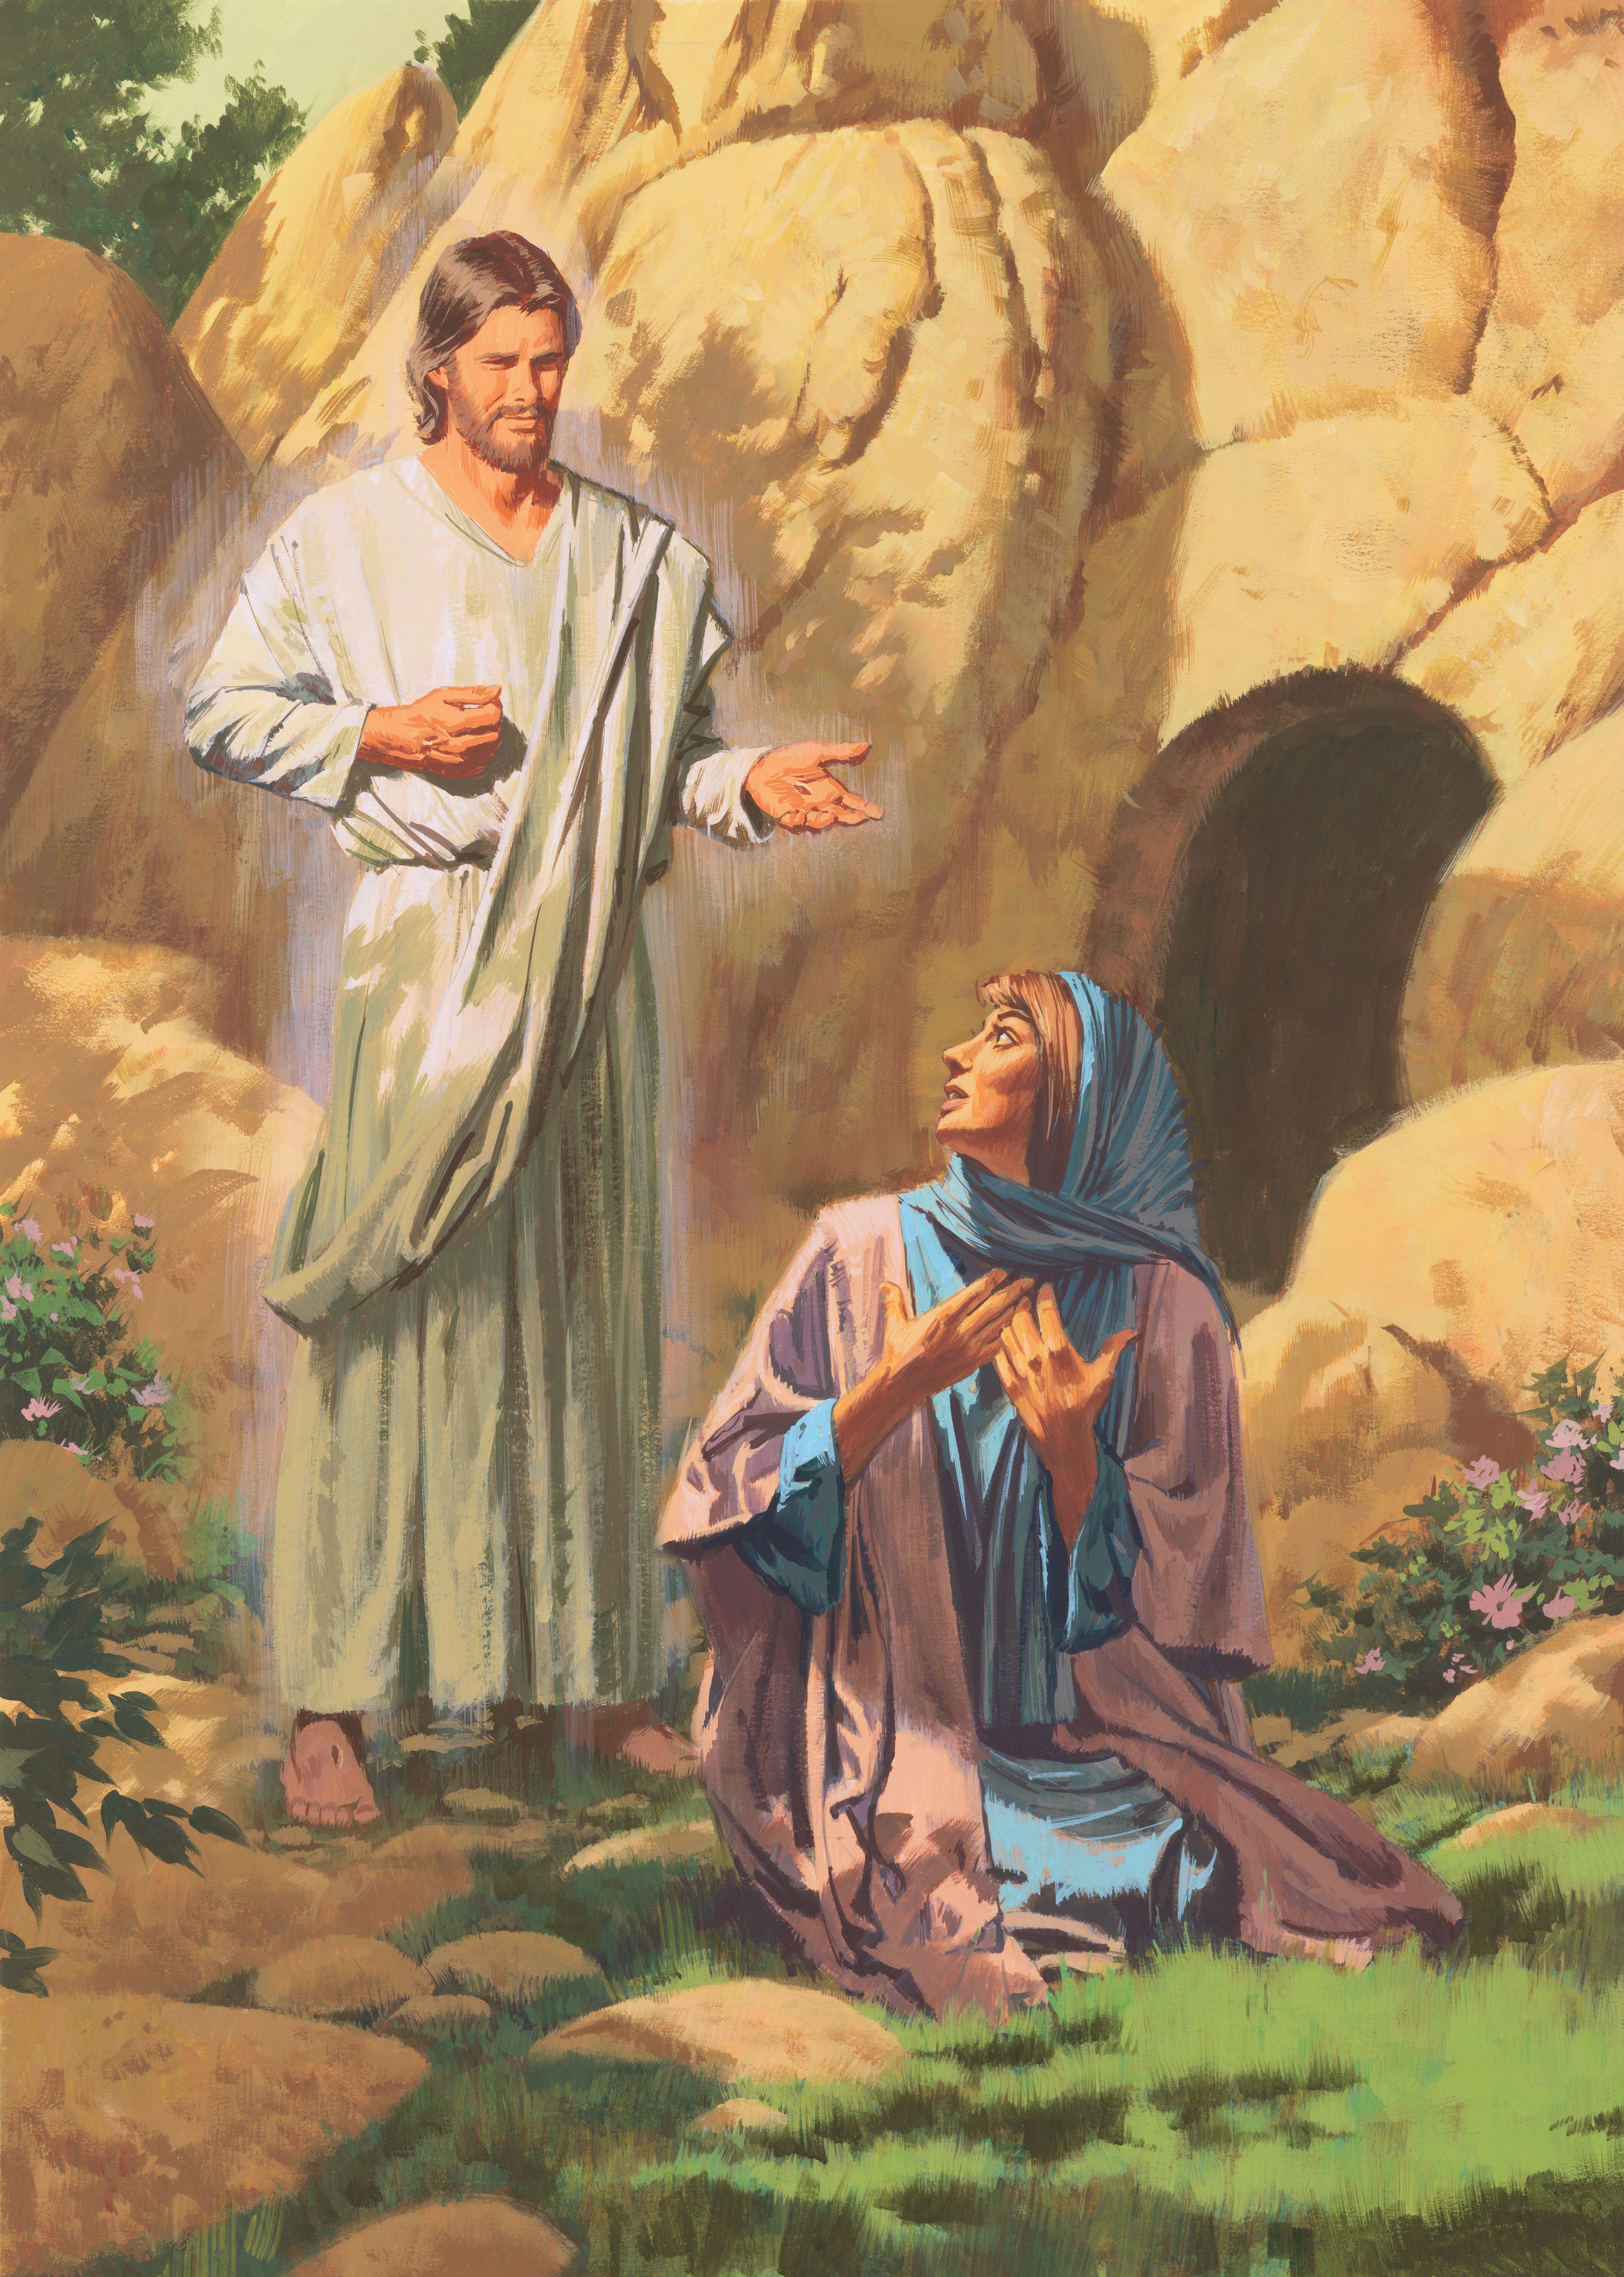 Gravura de Paul Mann retratando o Cristo ressuscitado conversando com Maria.